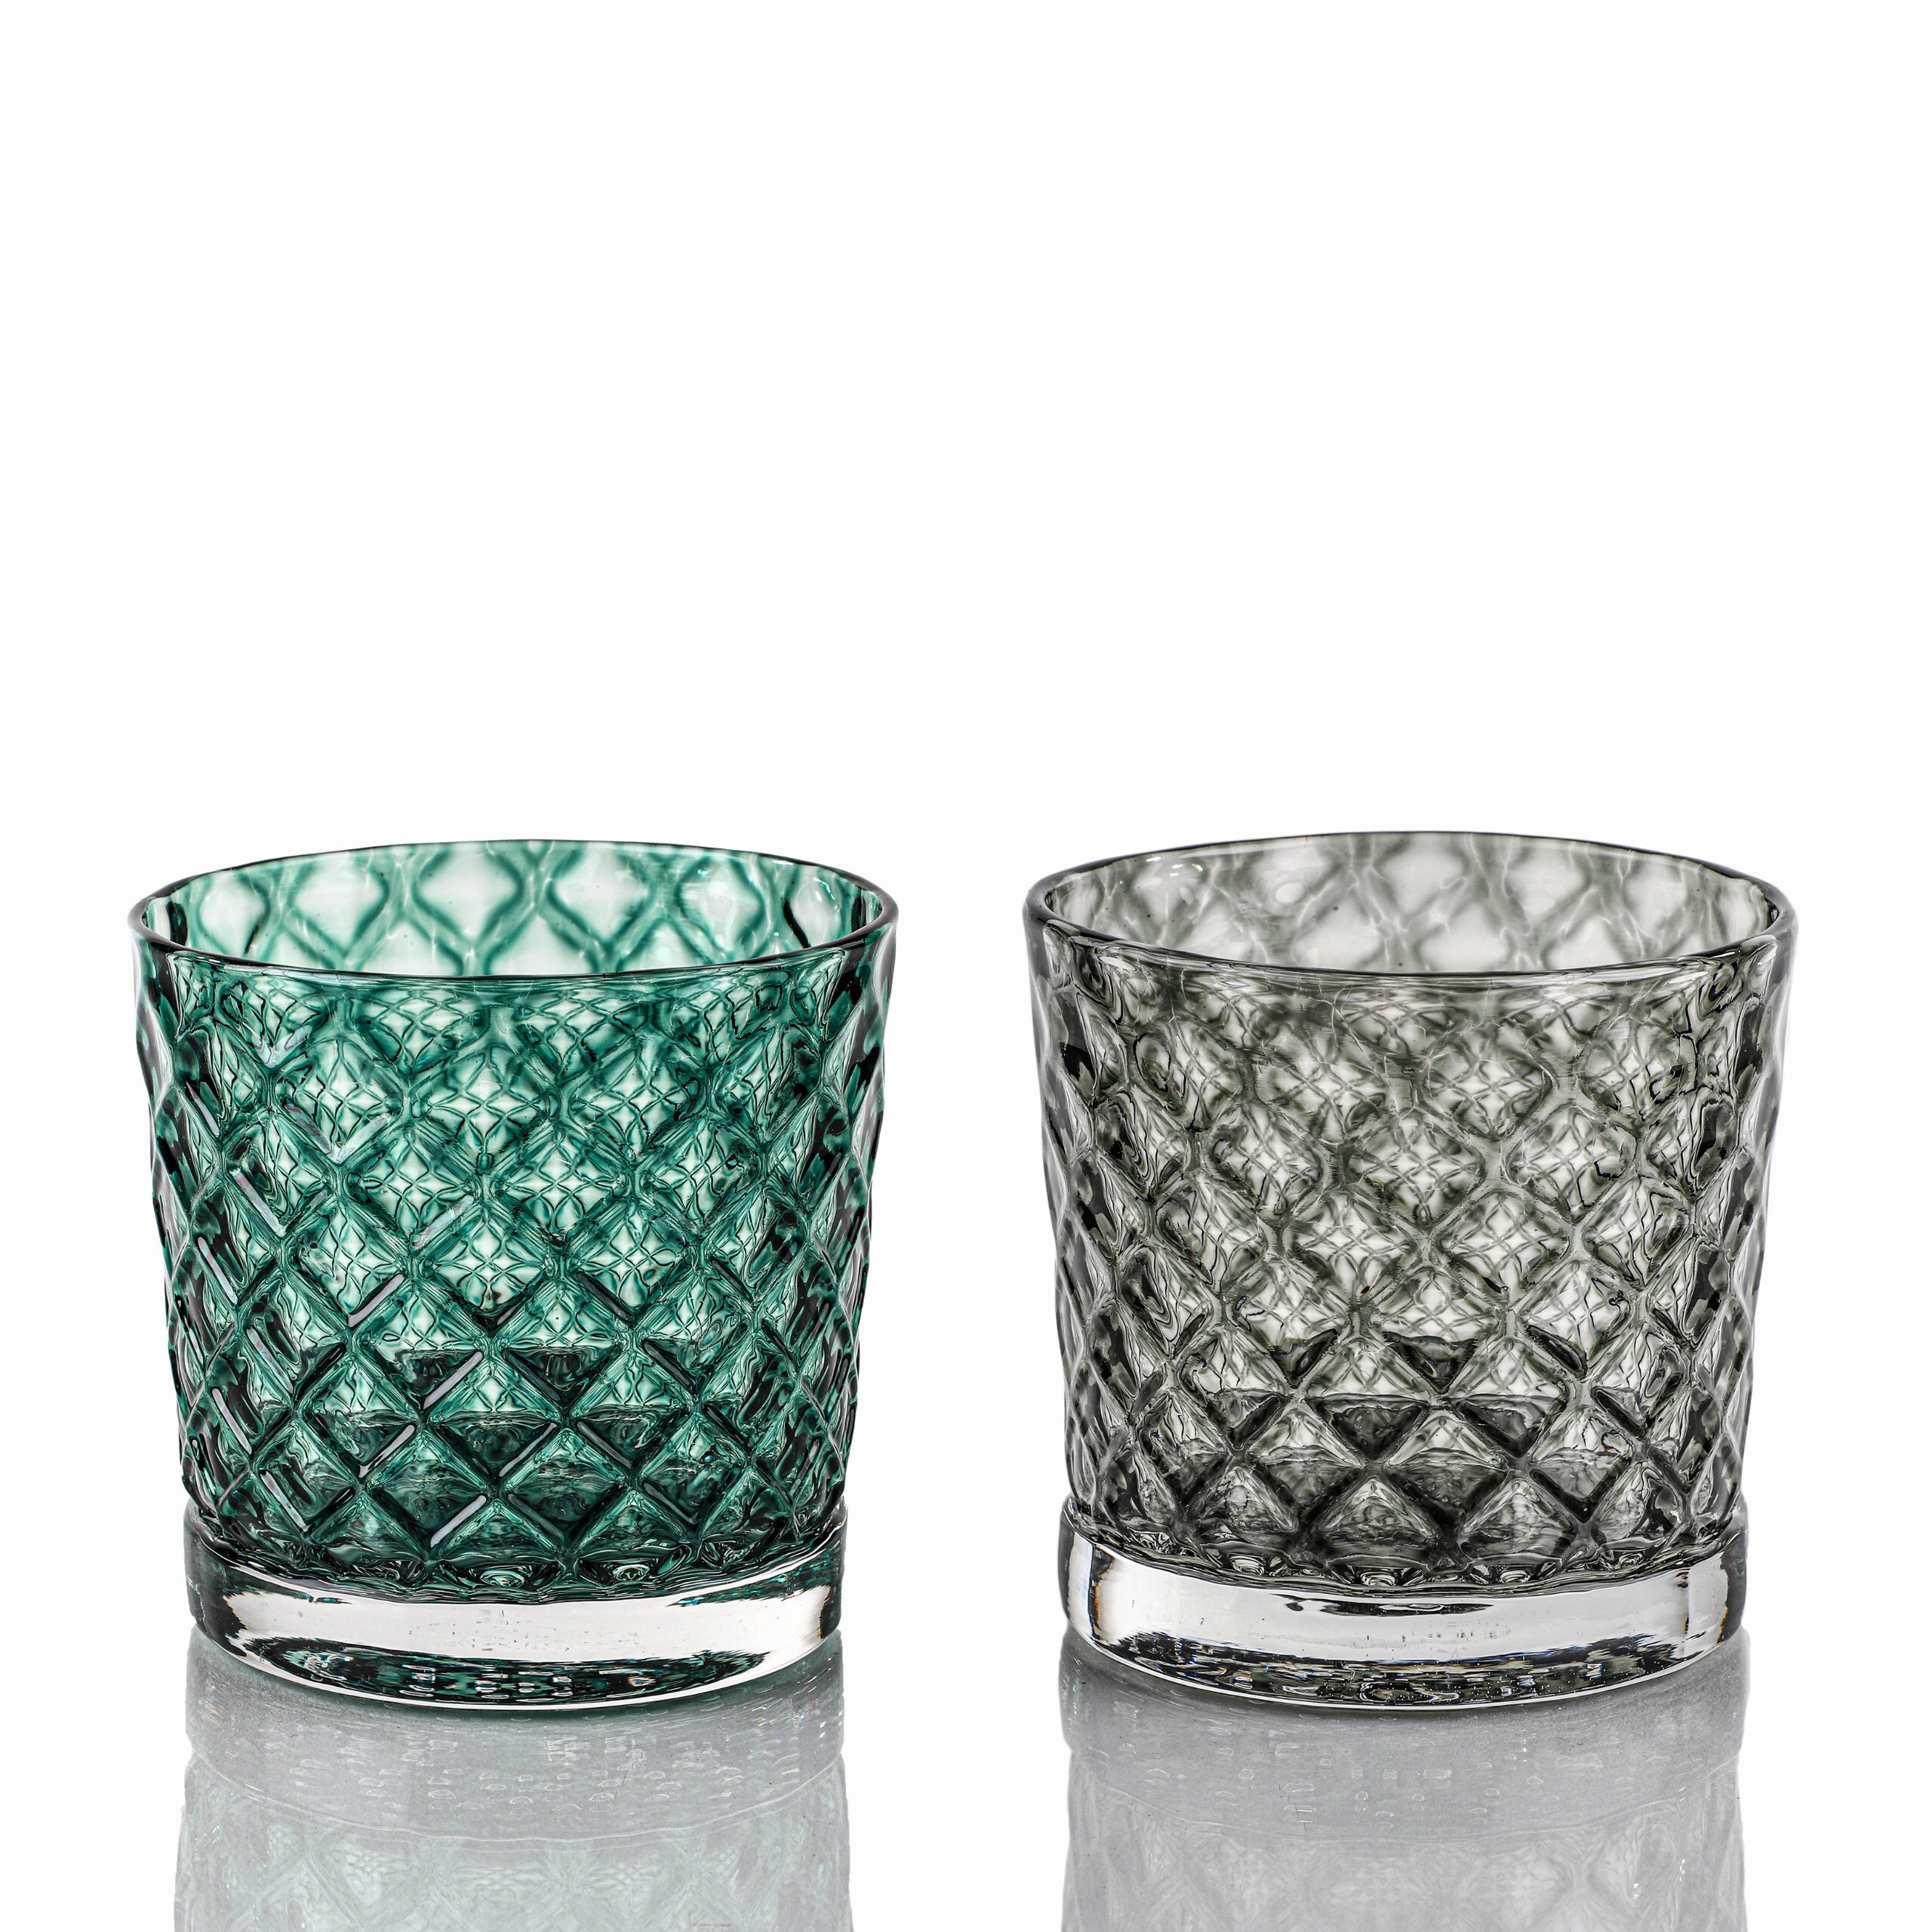 Deep Pine & Wintergreen Mindala Glass Set Hand Blown Glass 